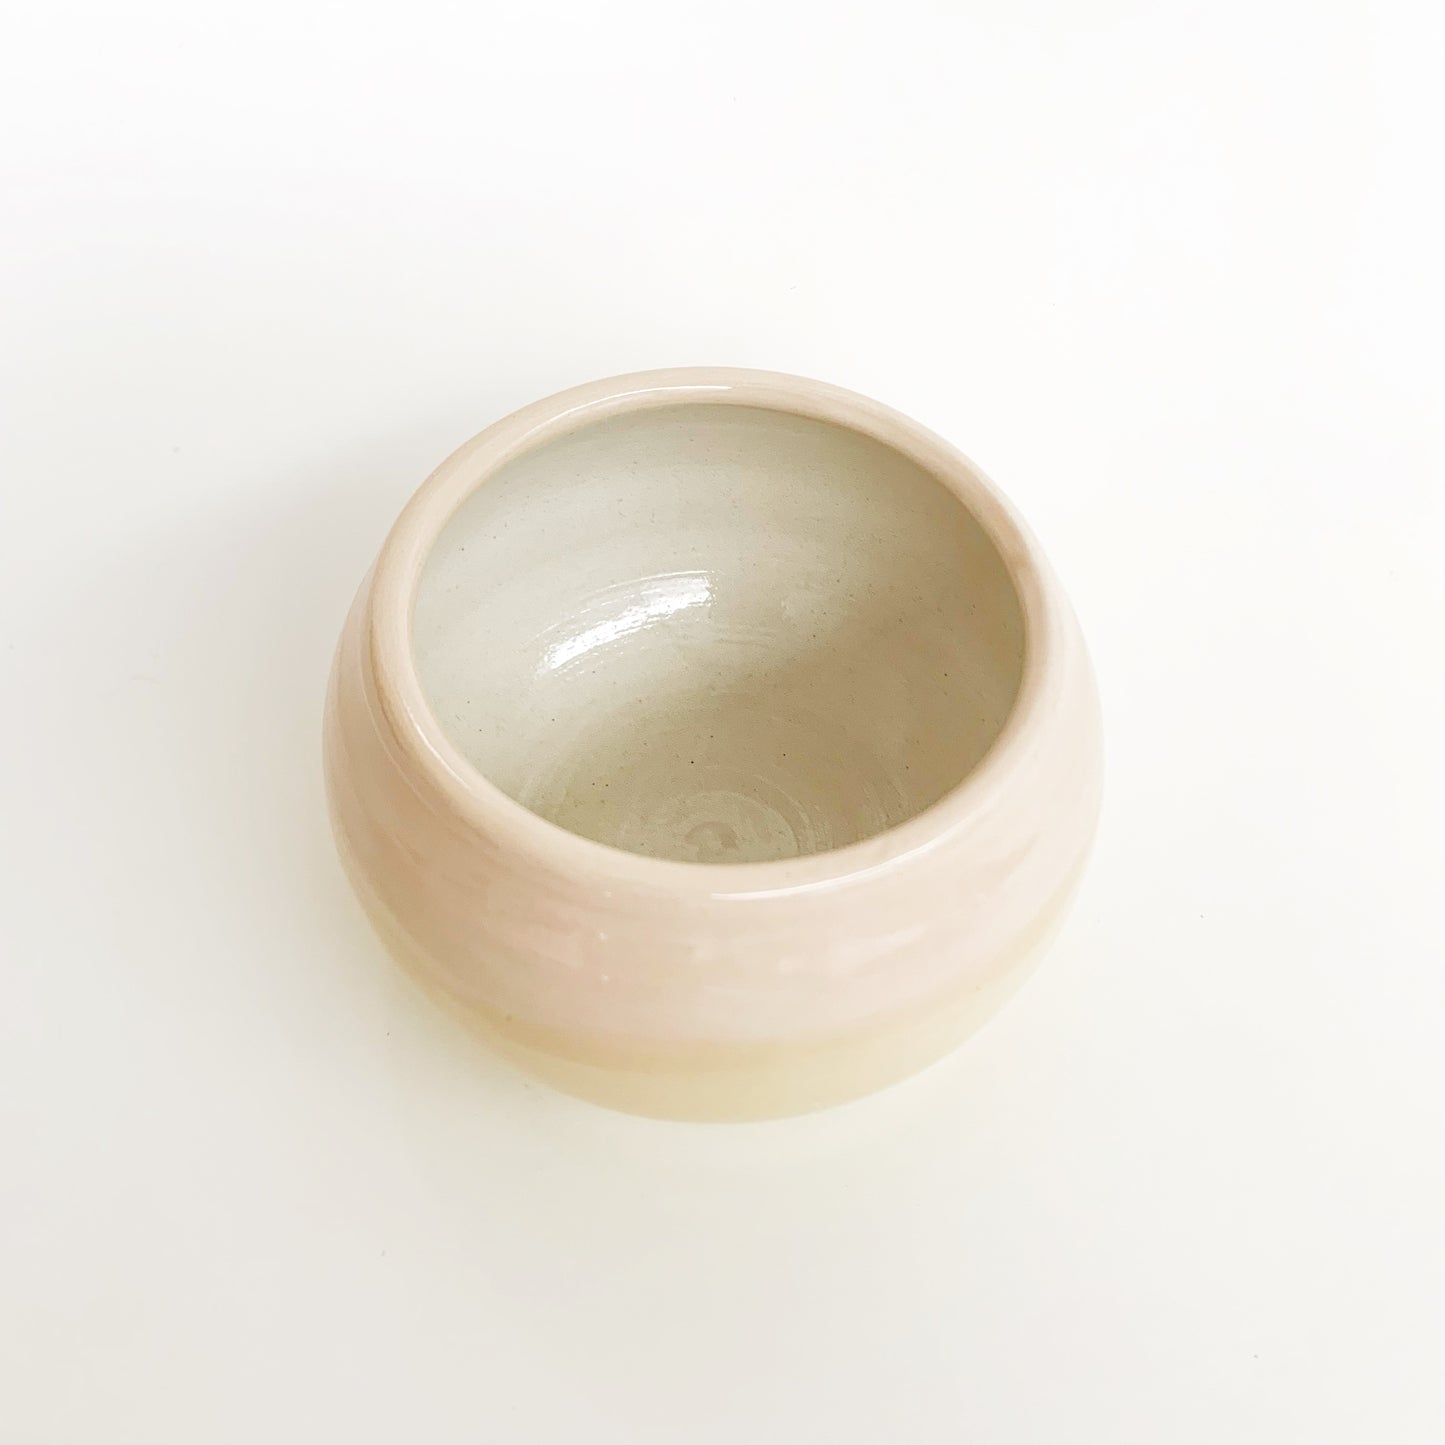 Vaso de cerámica - Sunset 2